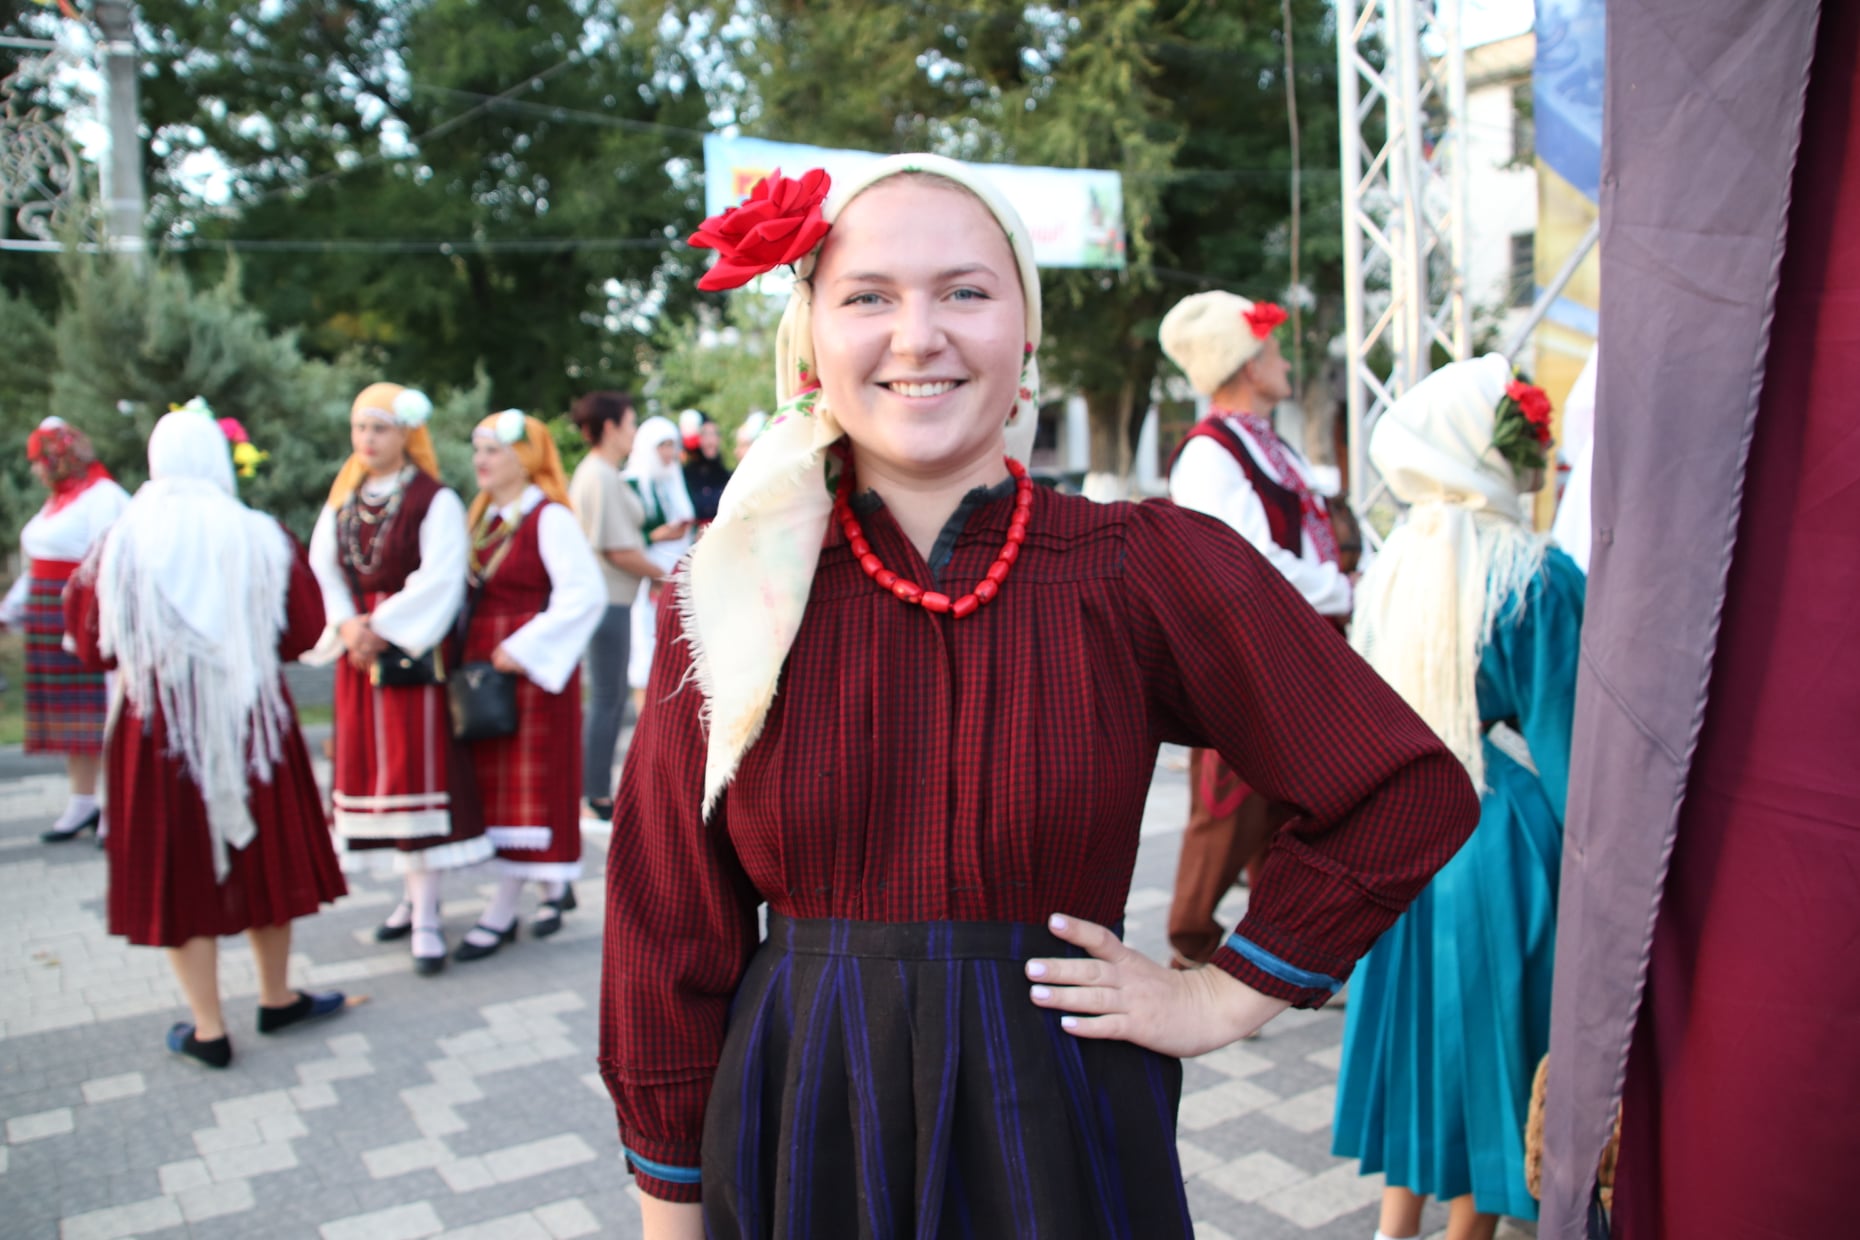 В Болграде подвели итоги международного этнофестиваля "ОКО" и объявили победителей.